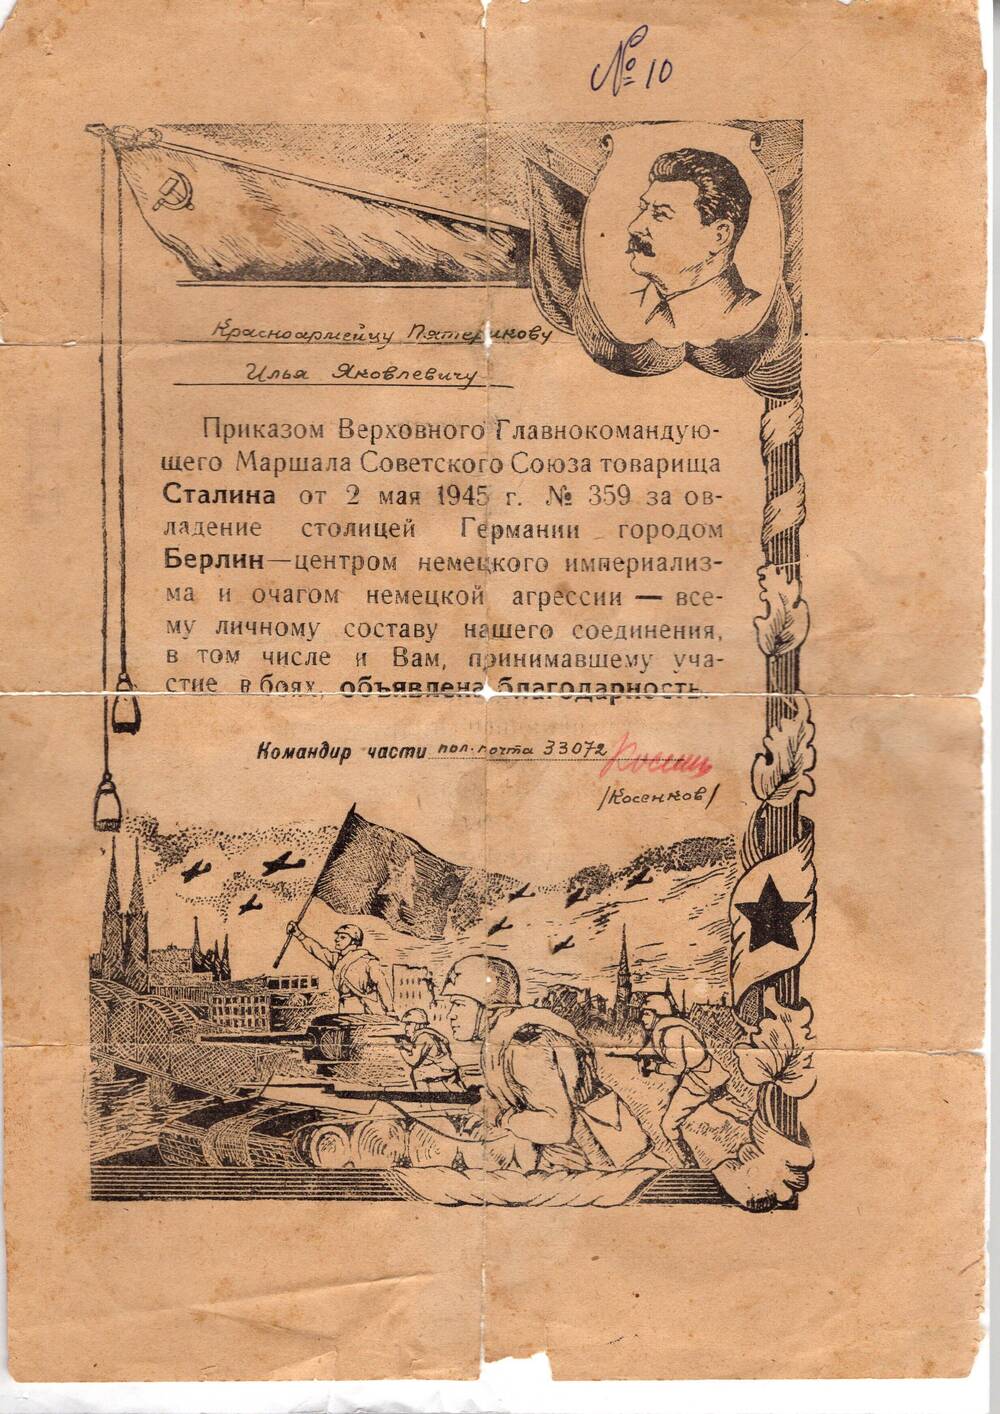 Благодарность Верховного Главнокомандующего т. Сталина от 2.05.1945г. №359 Пятерикову И.Я. красноармейцу